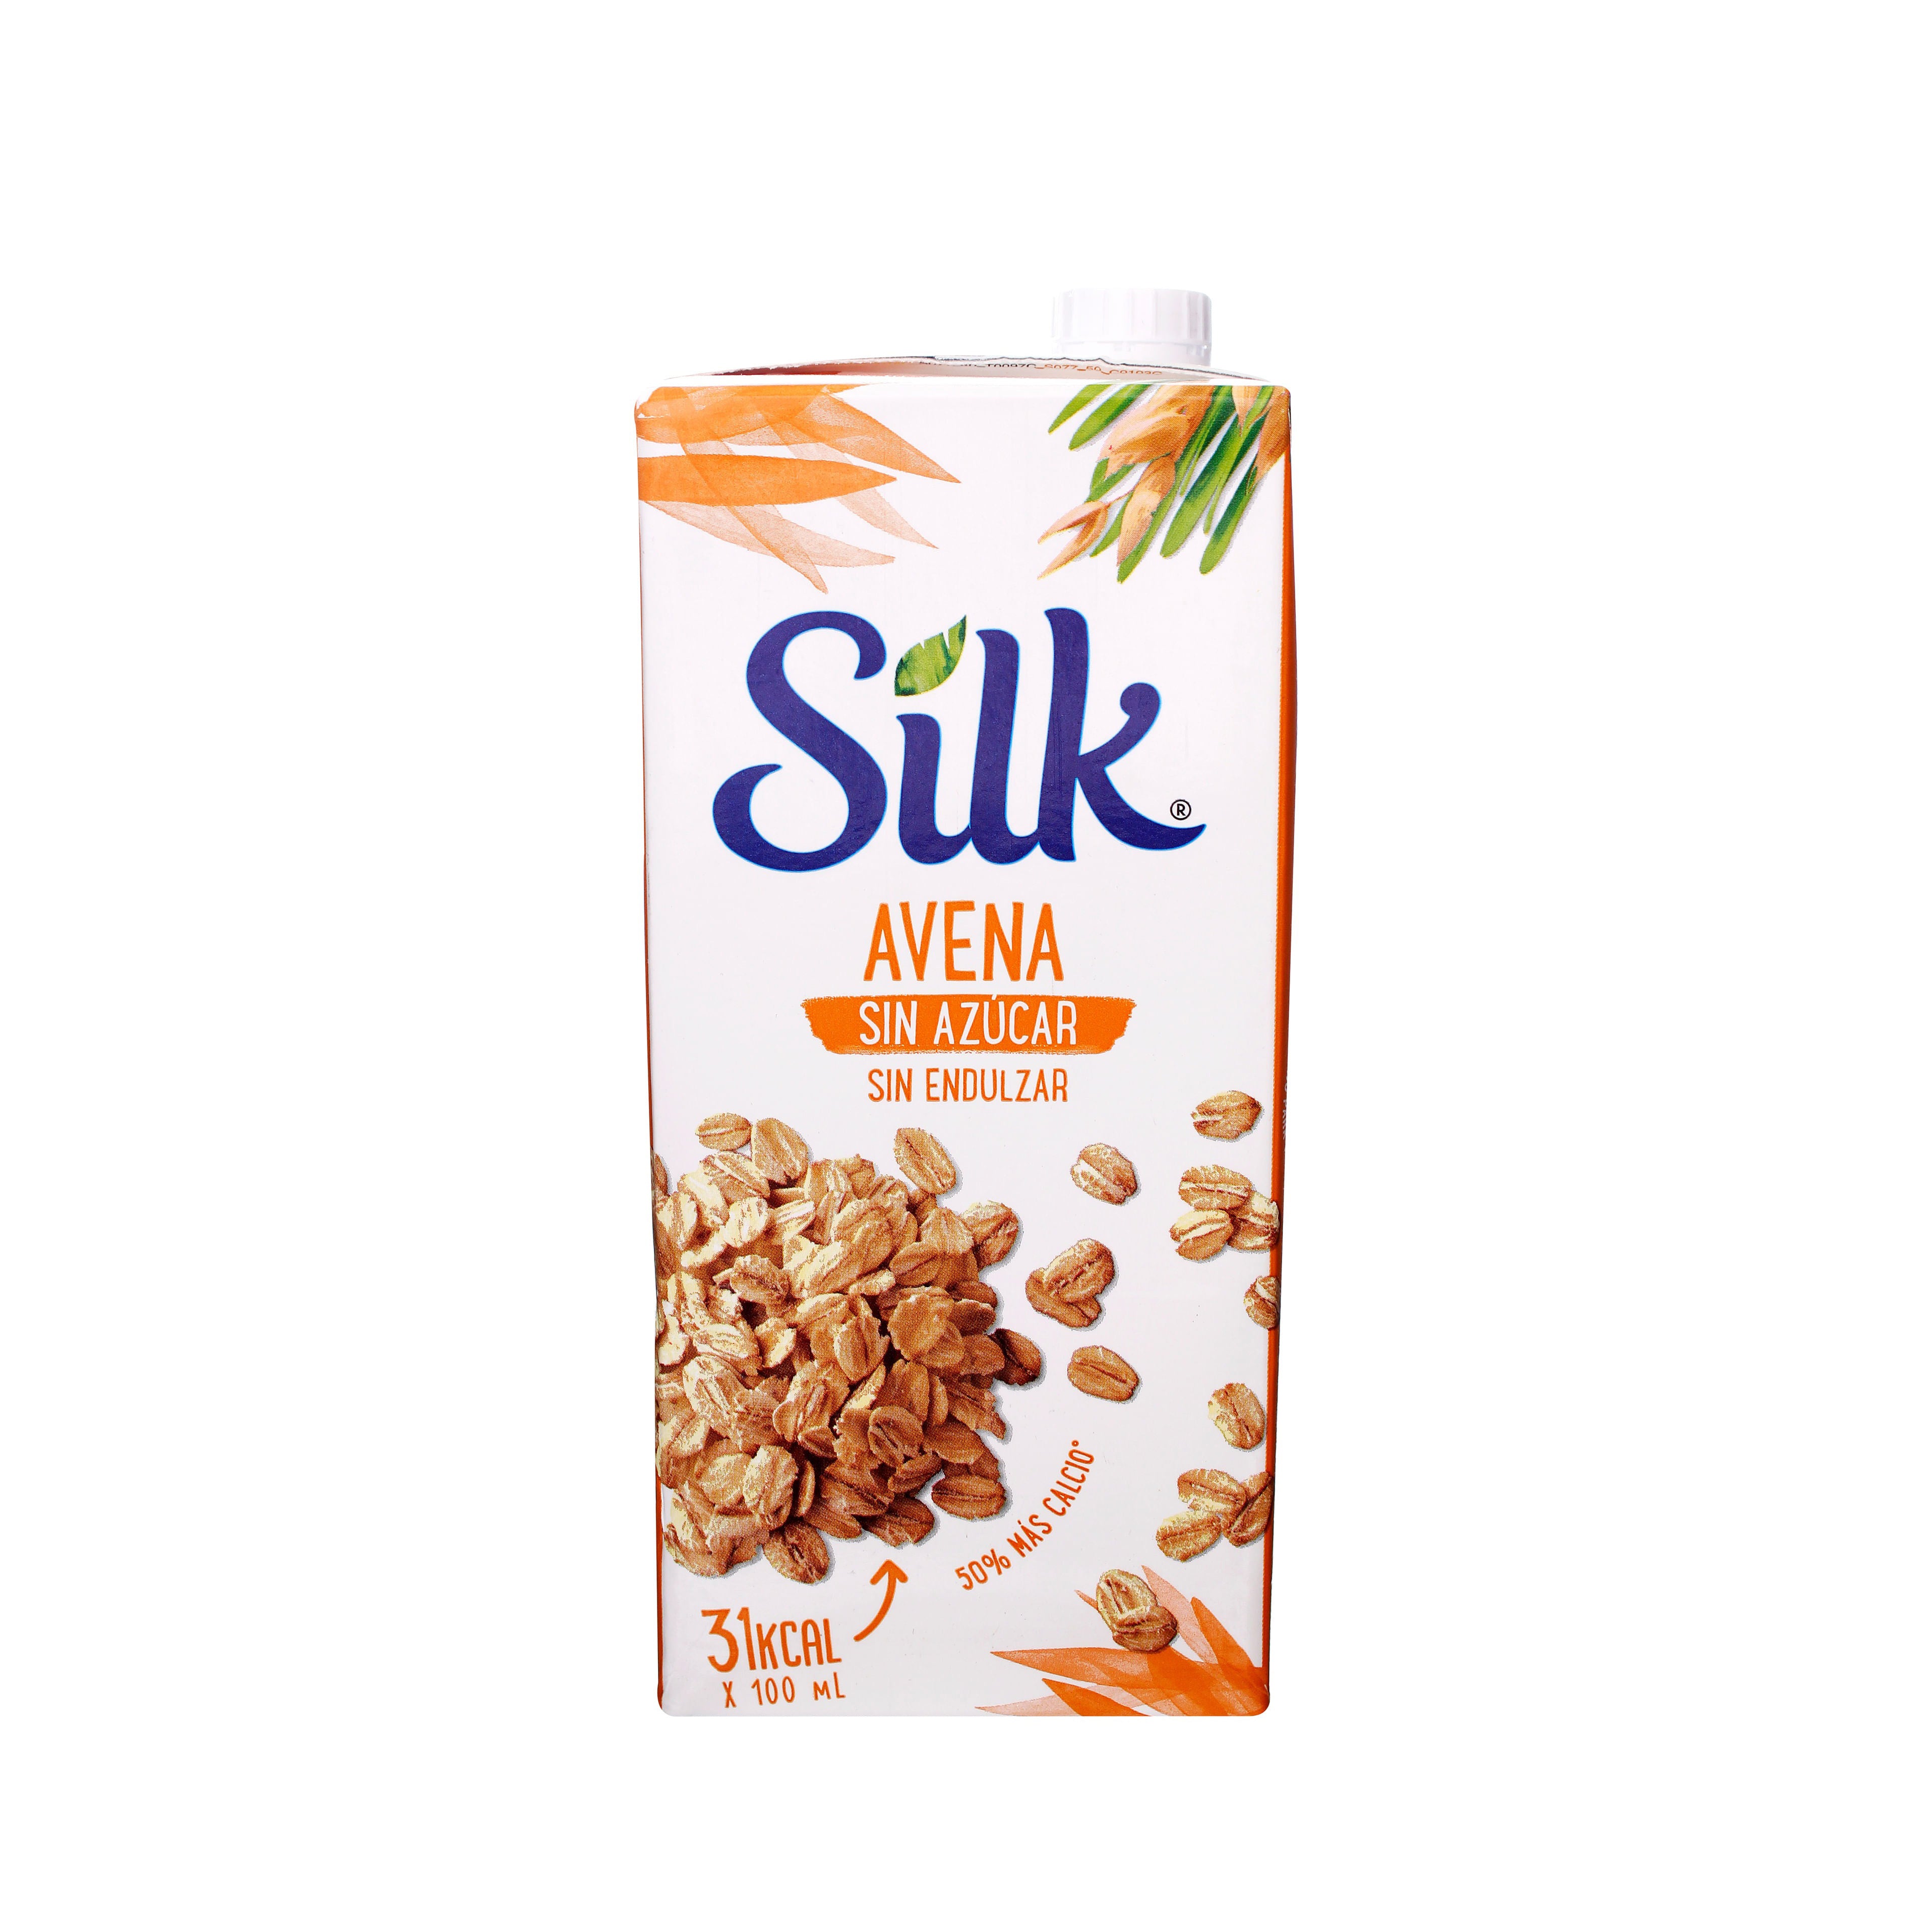 Silk Original unsweetened oat milk